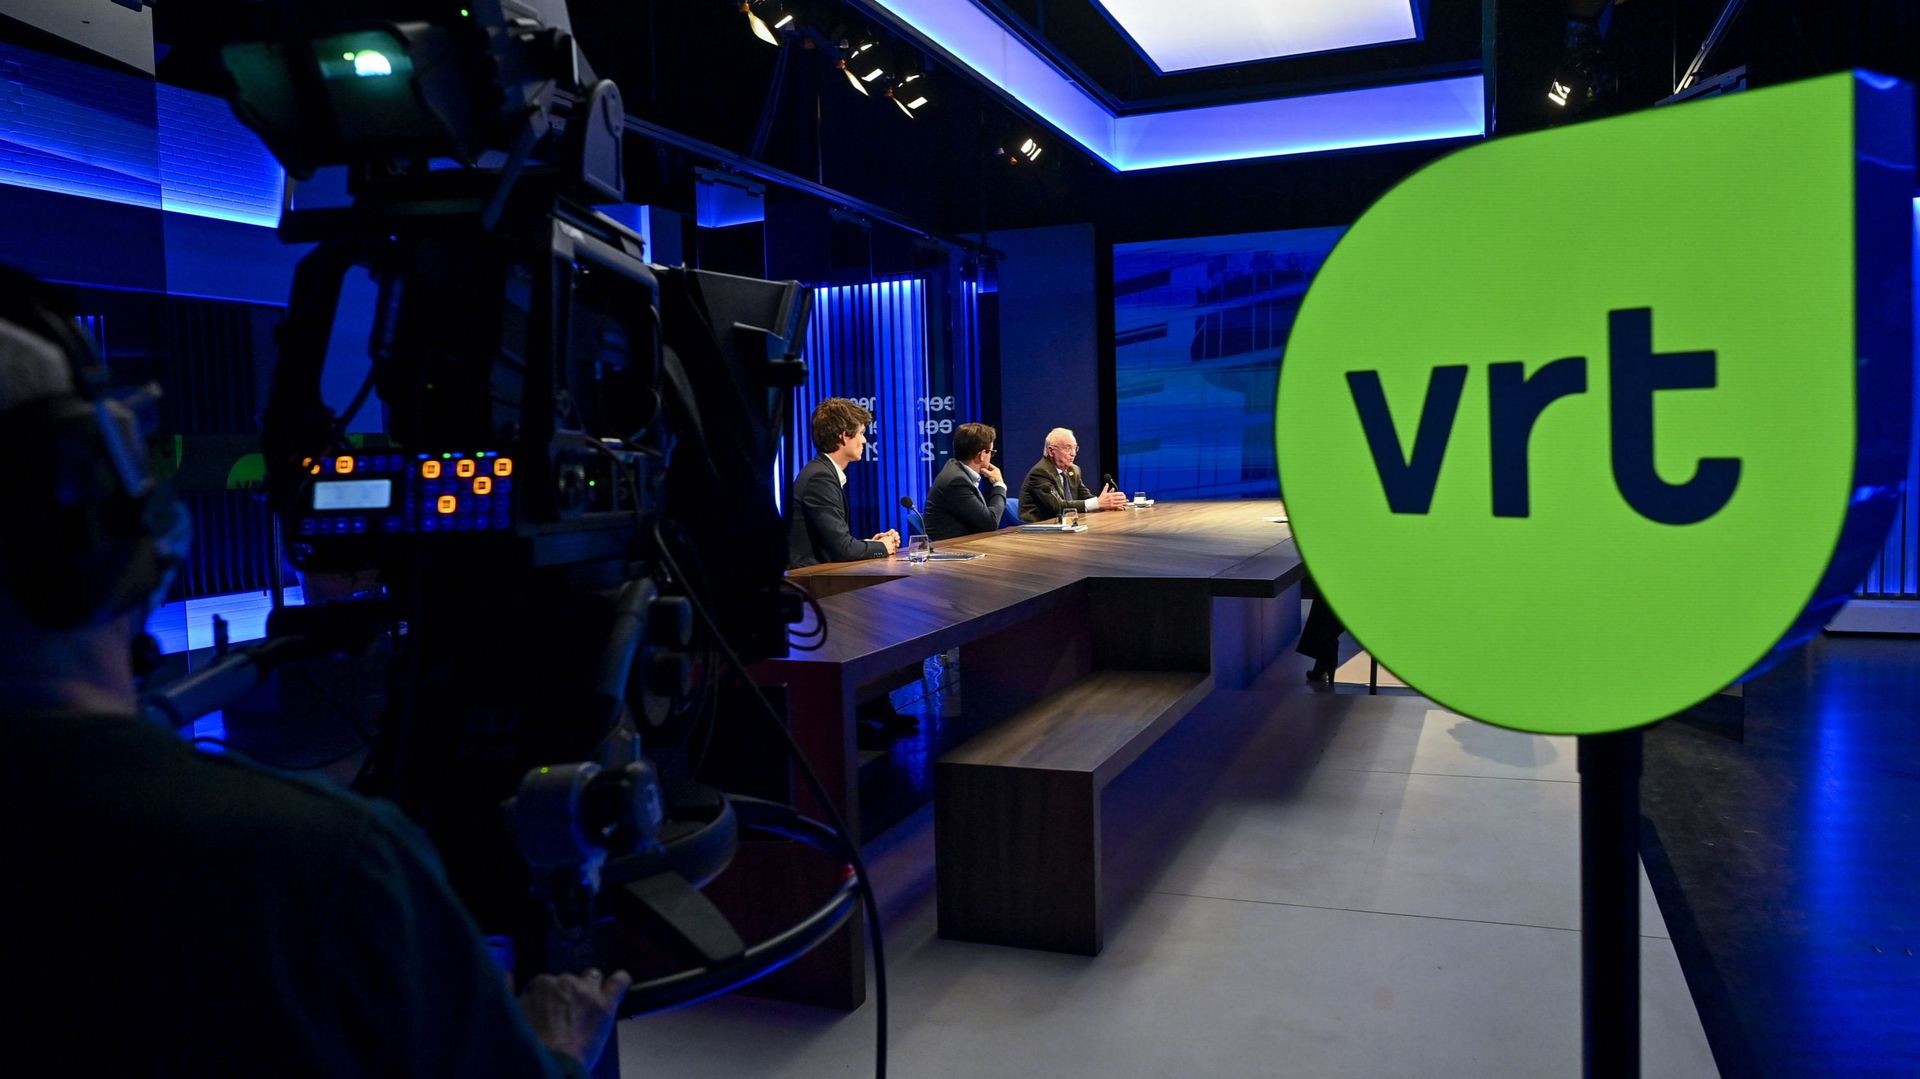 Flandre : La VRT est-elle impartiale dans son traitement de l’actualité ? Une étude y répond